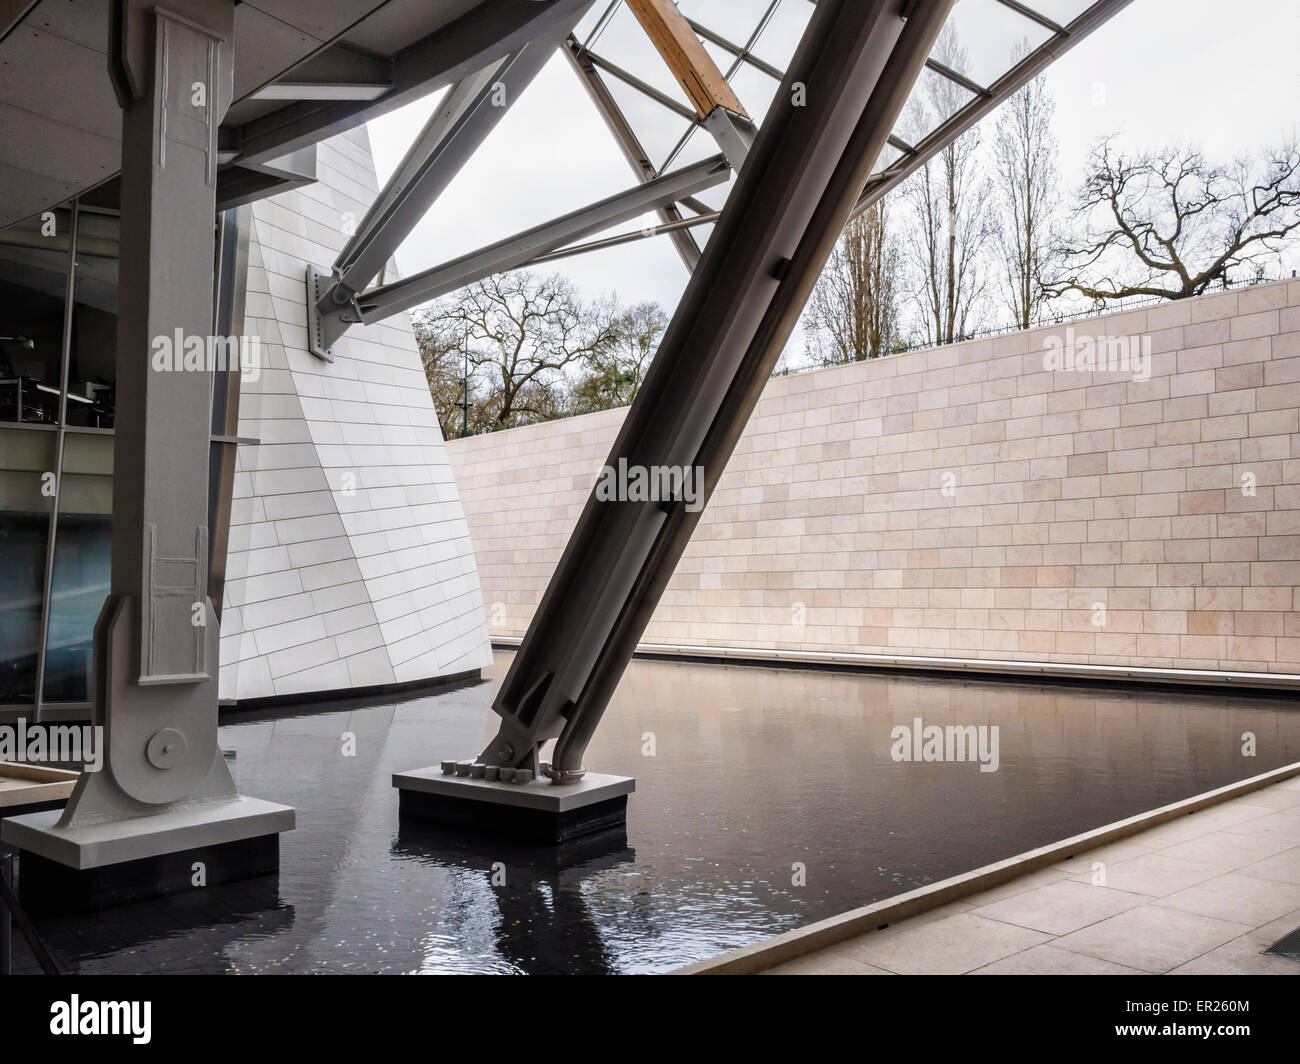 Fondazione di Parigi Louis Vuitton galleria d'arte, esterno del moderno in vetro e acciaio da costruzione architetto Frank Gehry Foto Stock